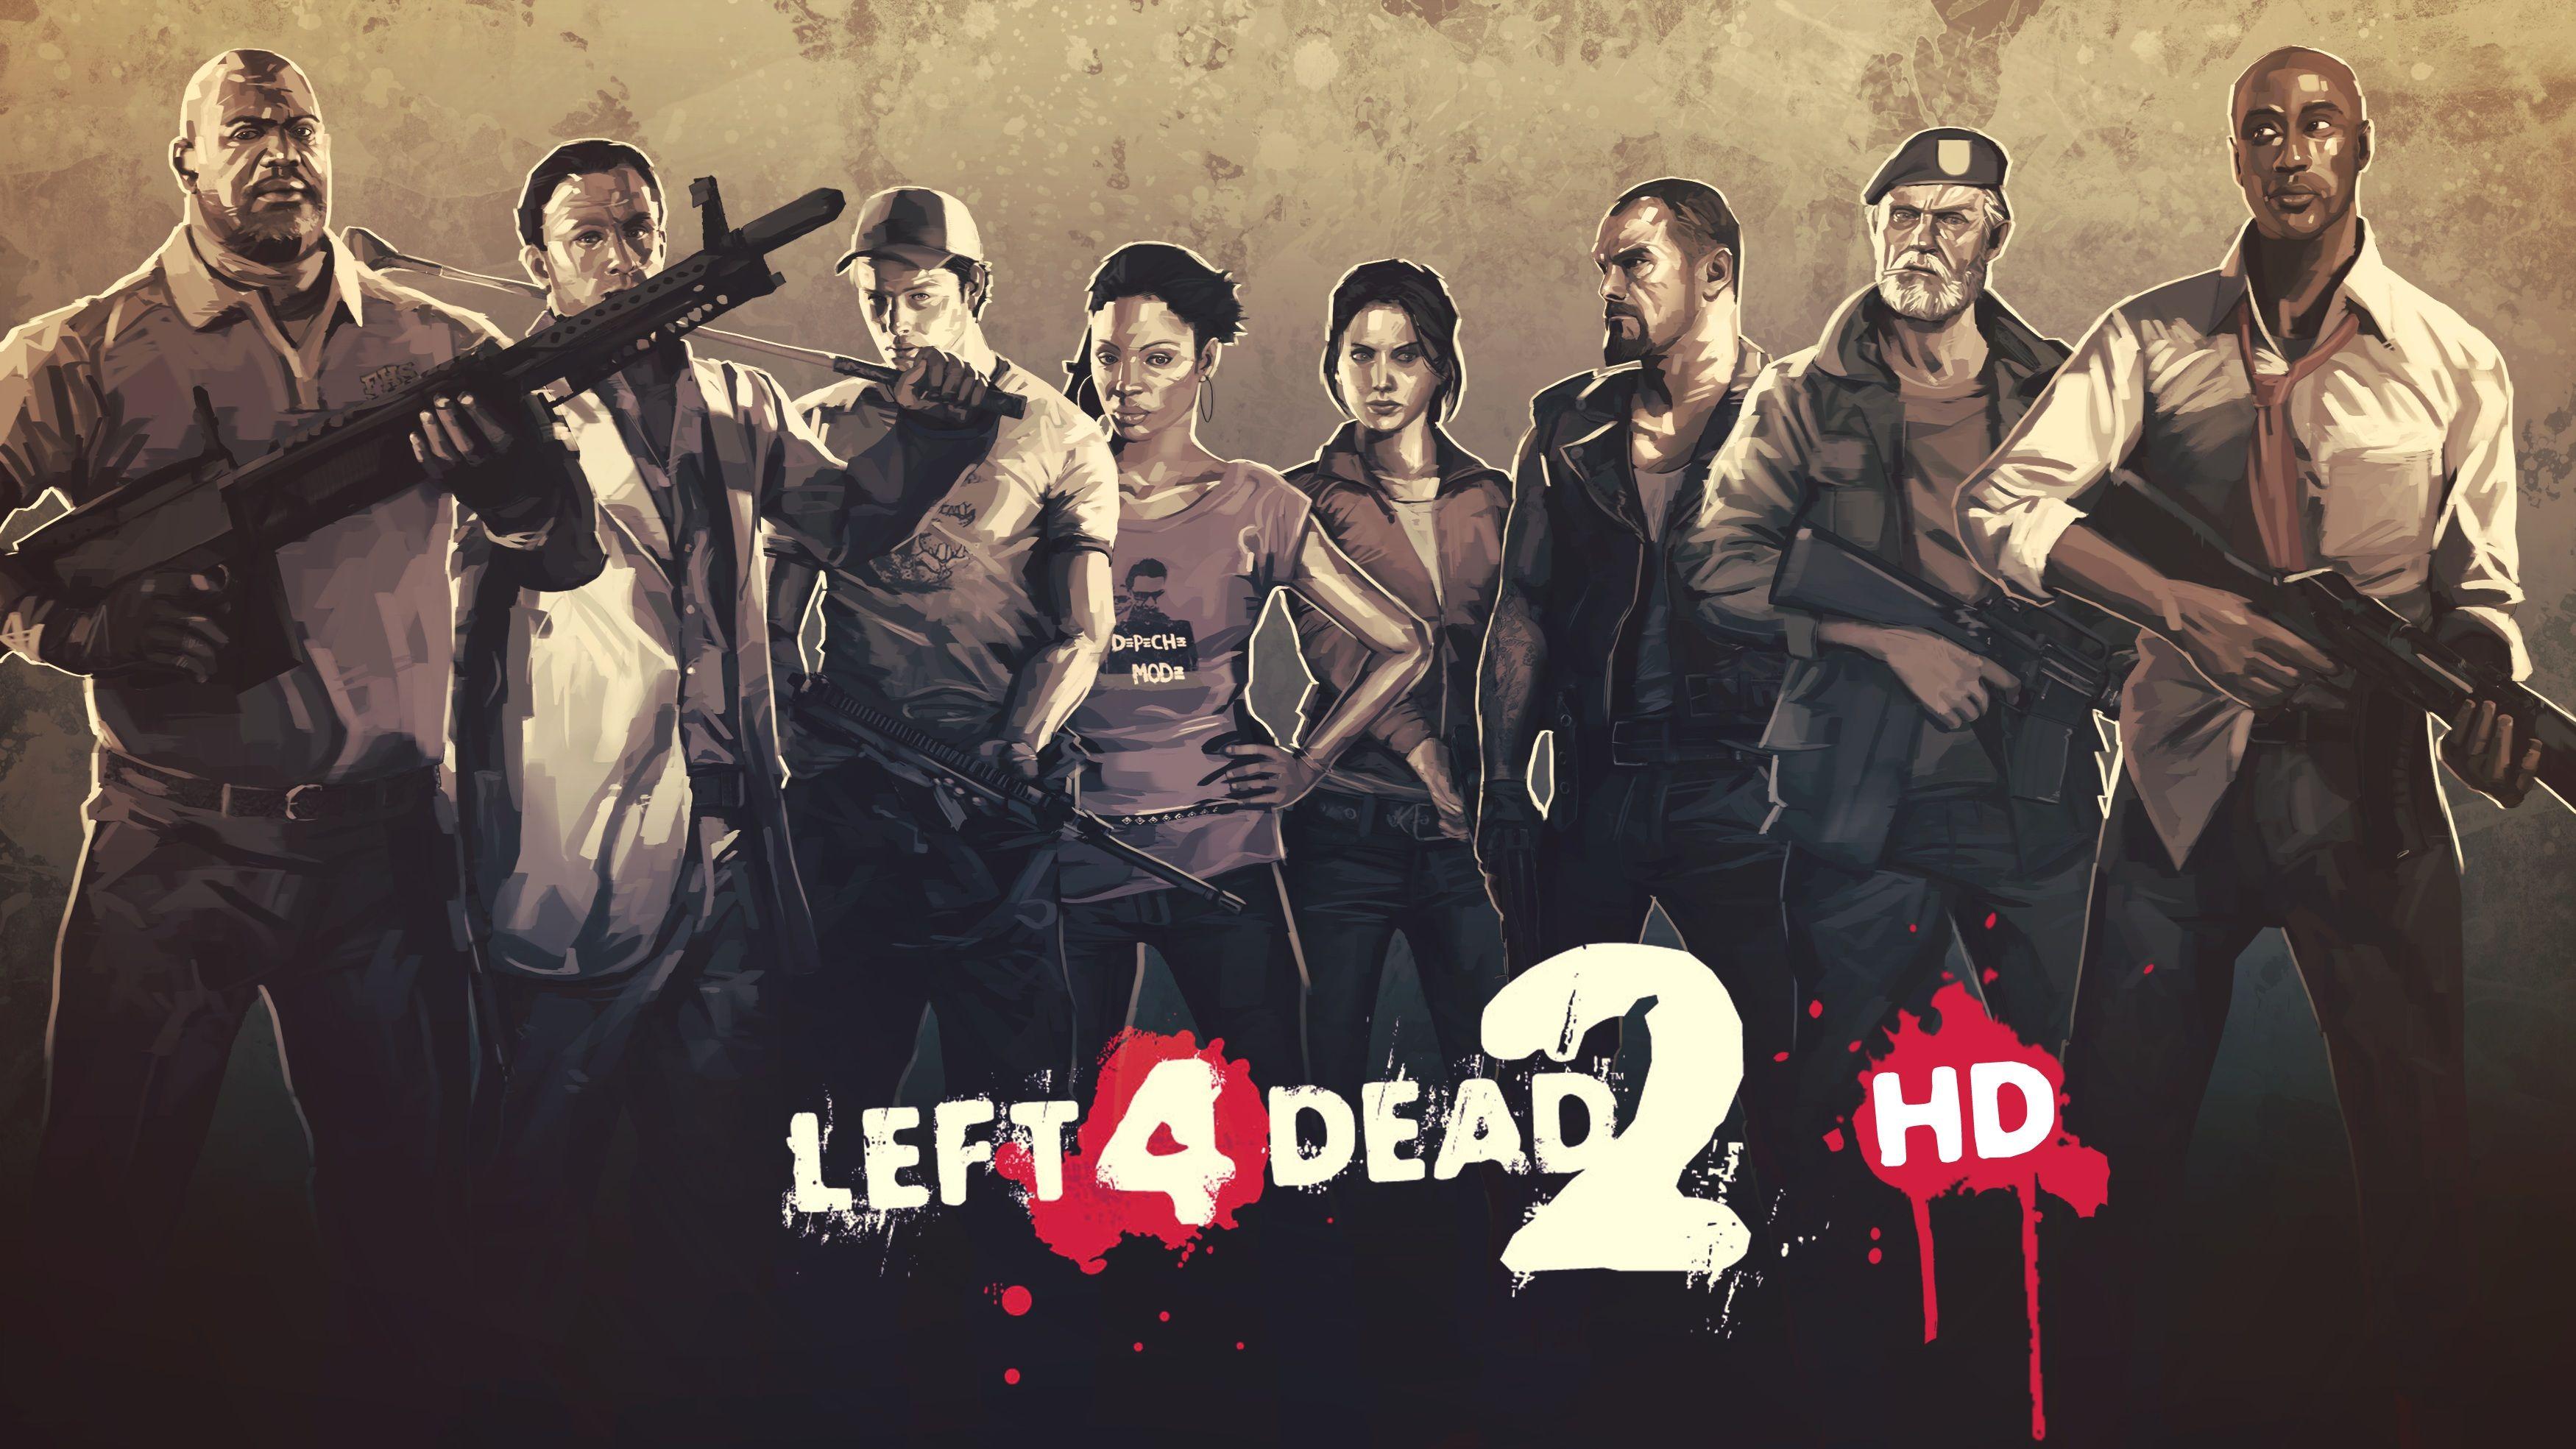 Steam Workshop - Left 4 Dead 2 HD OverHaul